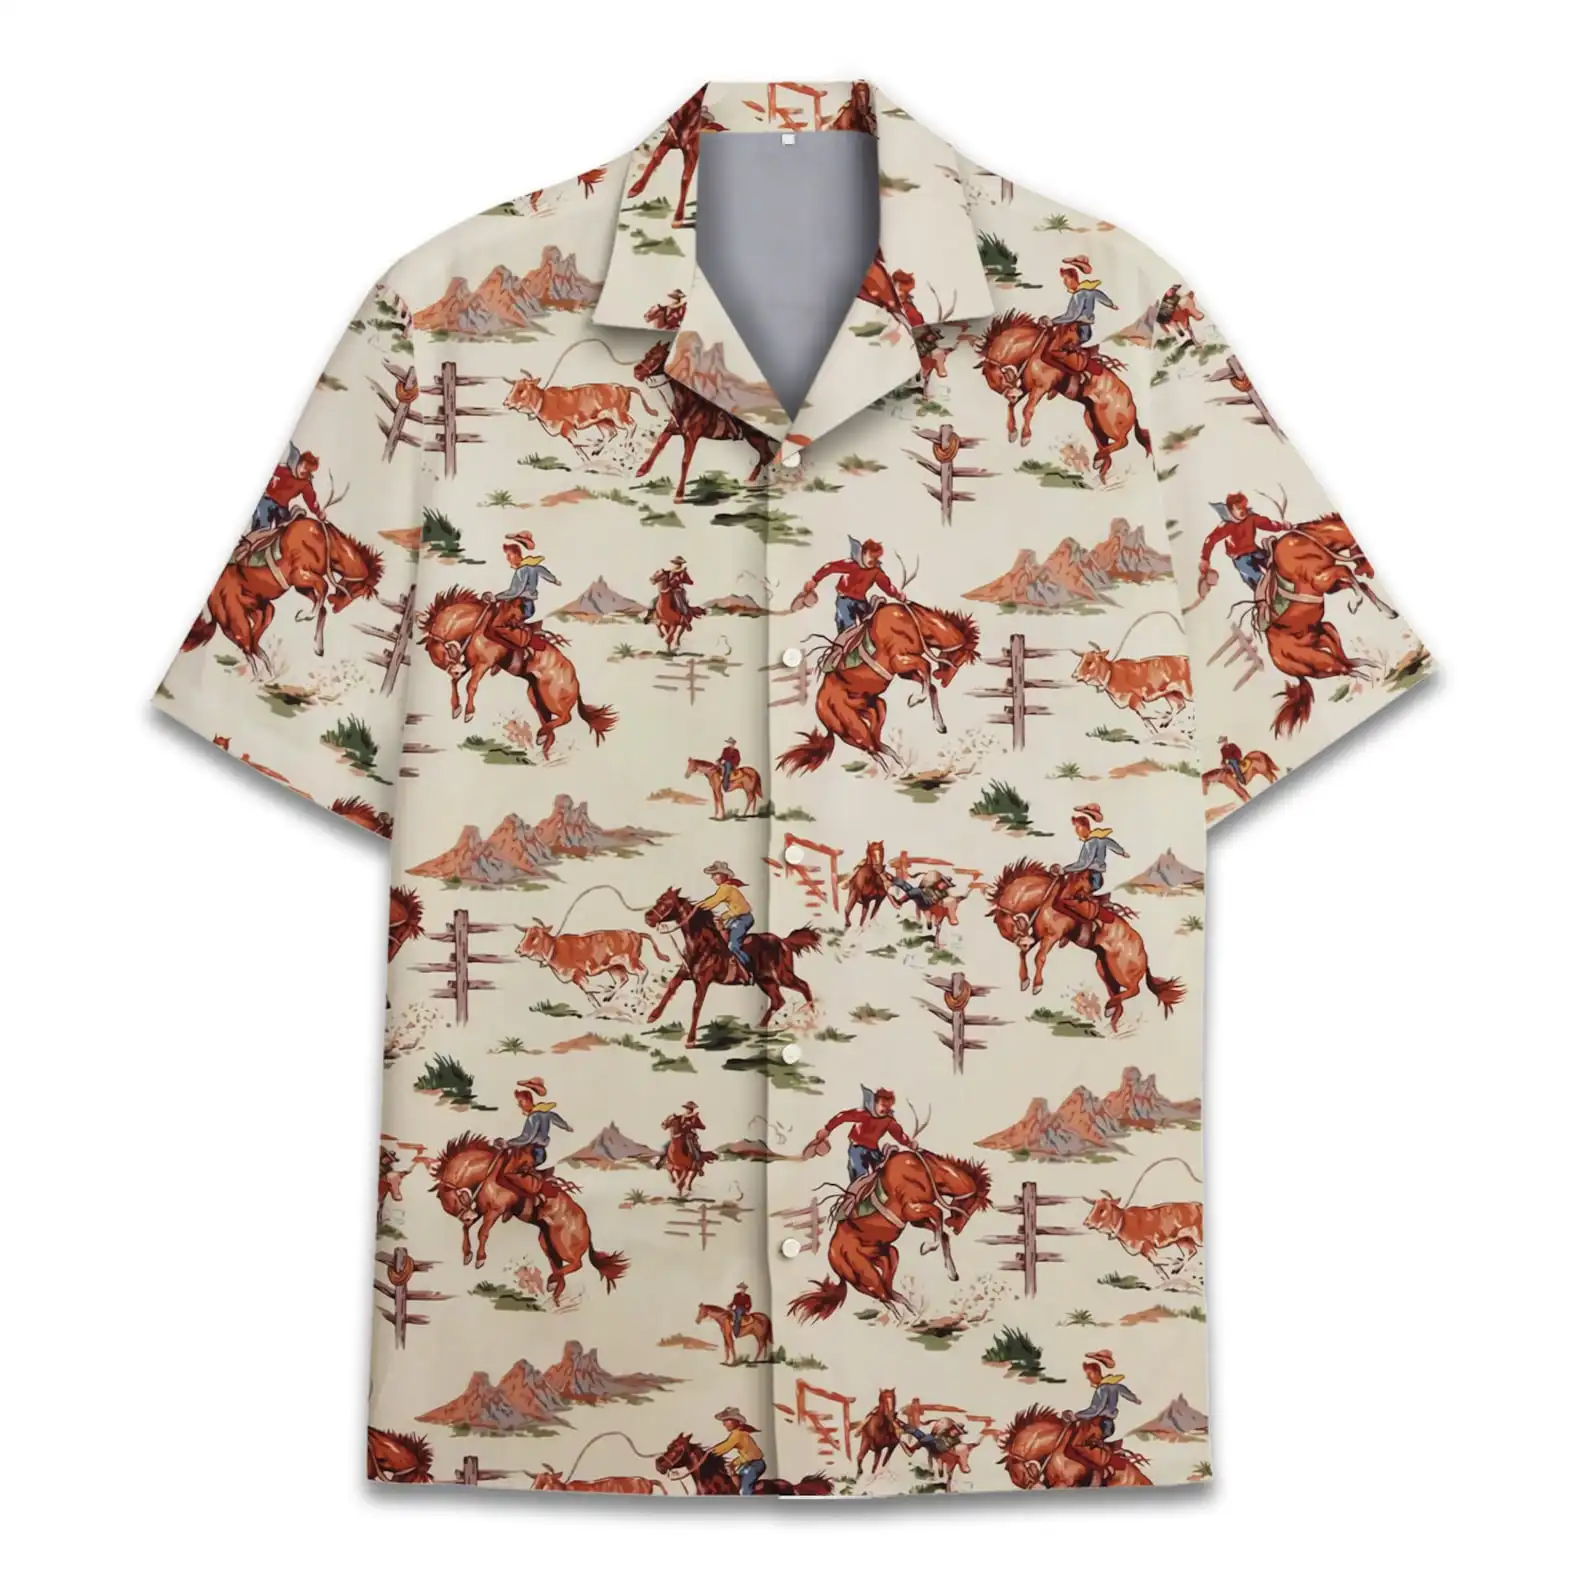 Western Cowboy Hawaiian Men'S Shirt T-shirts for men Short sleeve tee tops Oversized shirt summer men dress shirt Men's clothing